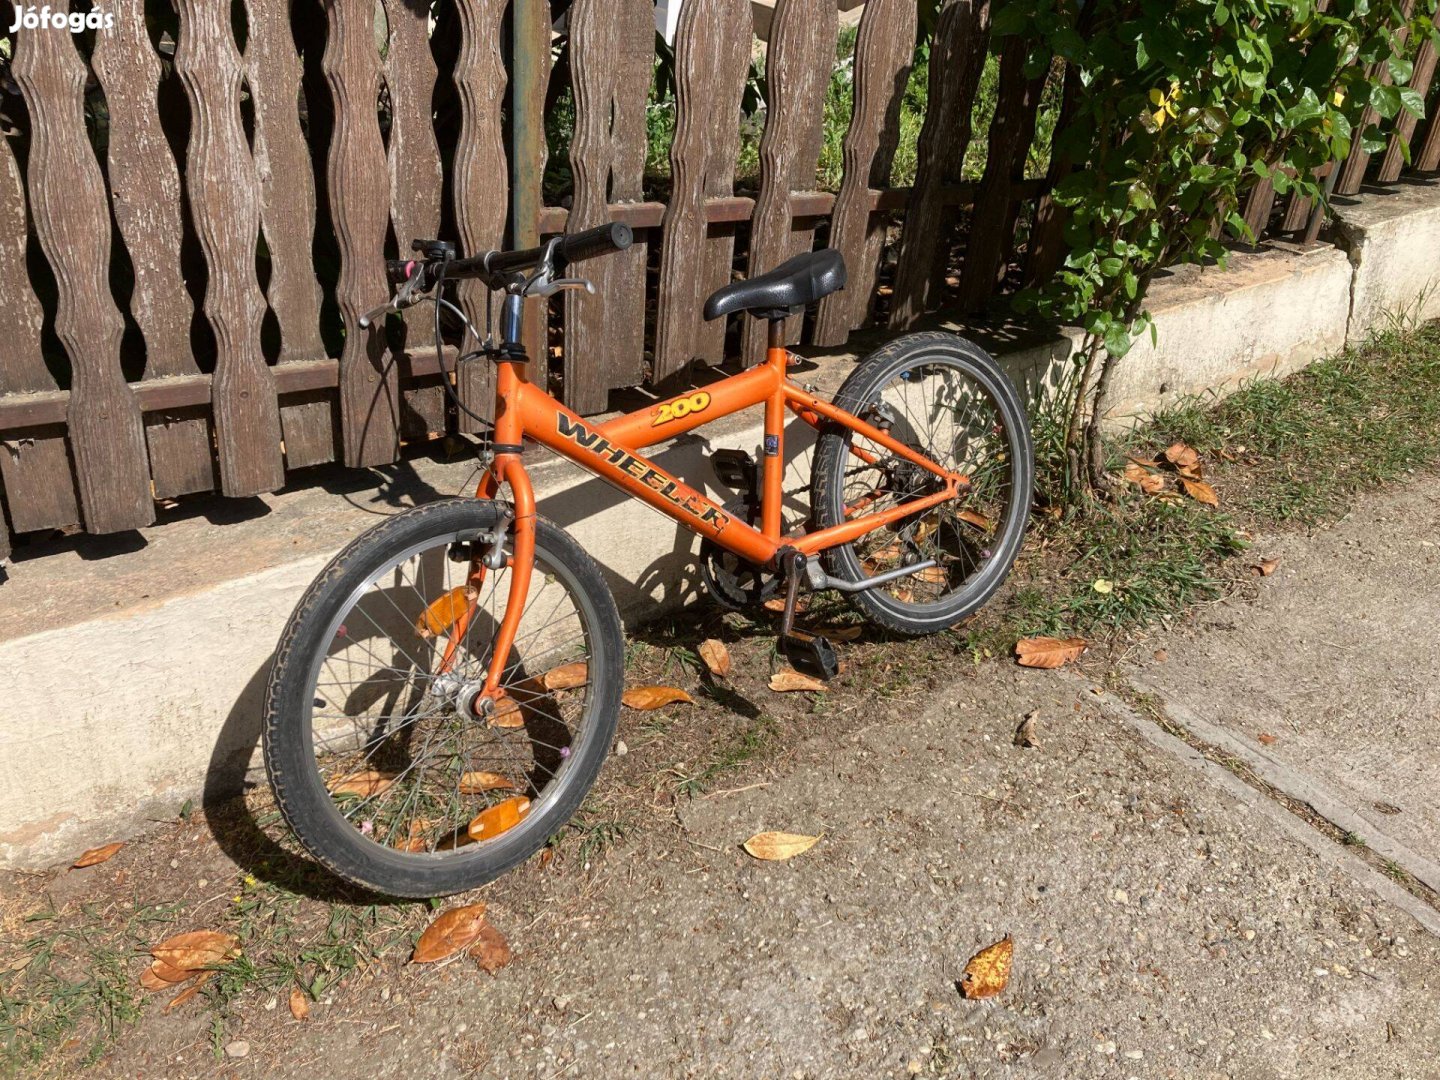 20" gyerek versenykerékpár használt állapotban Miskolcon eladó